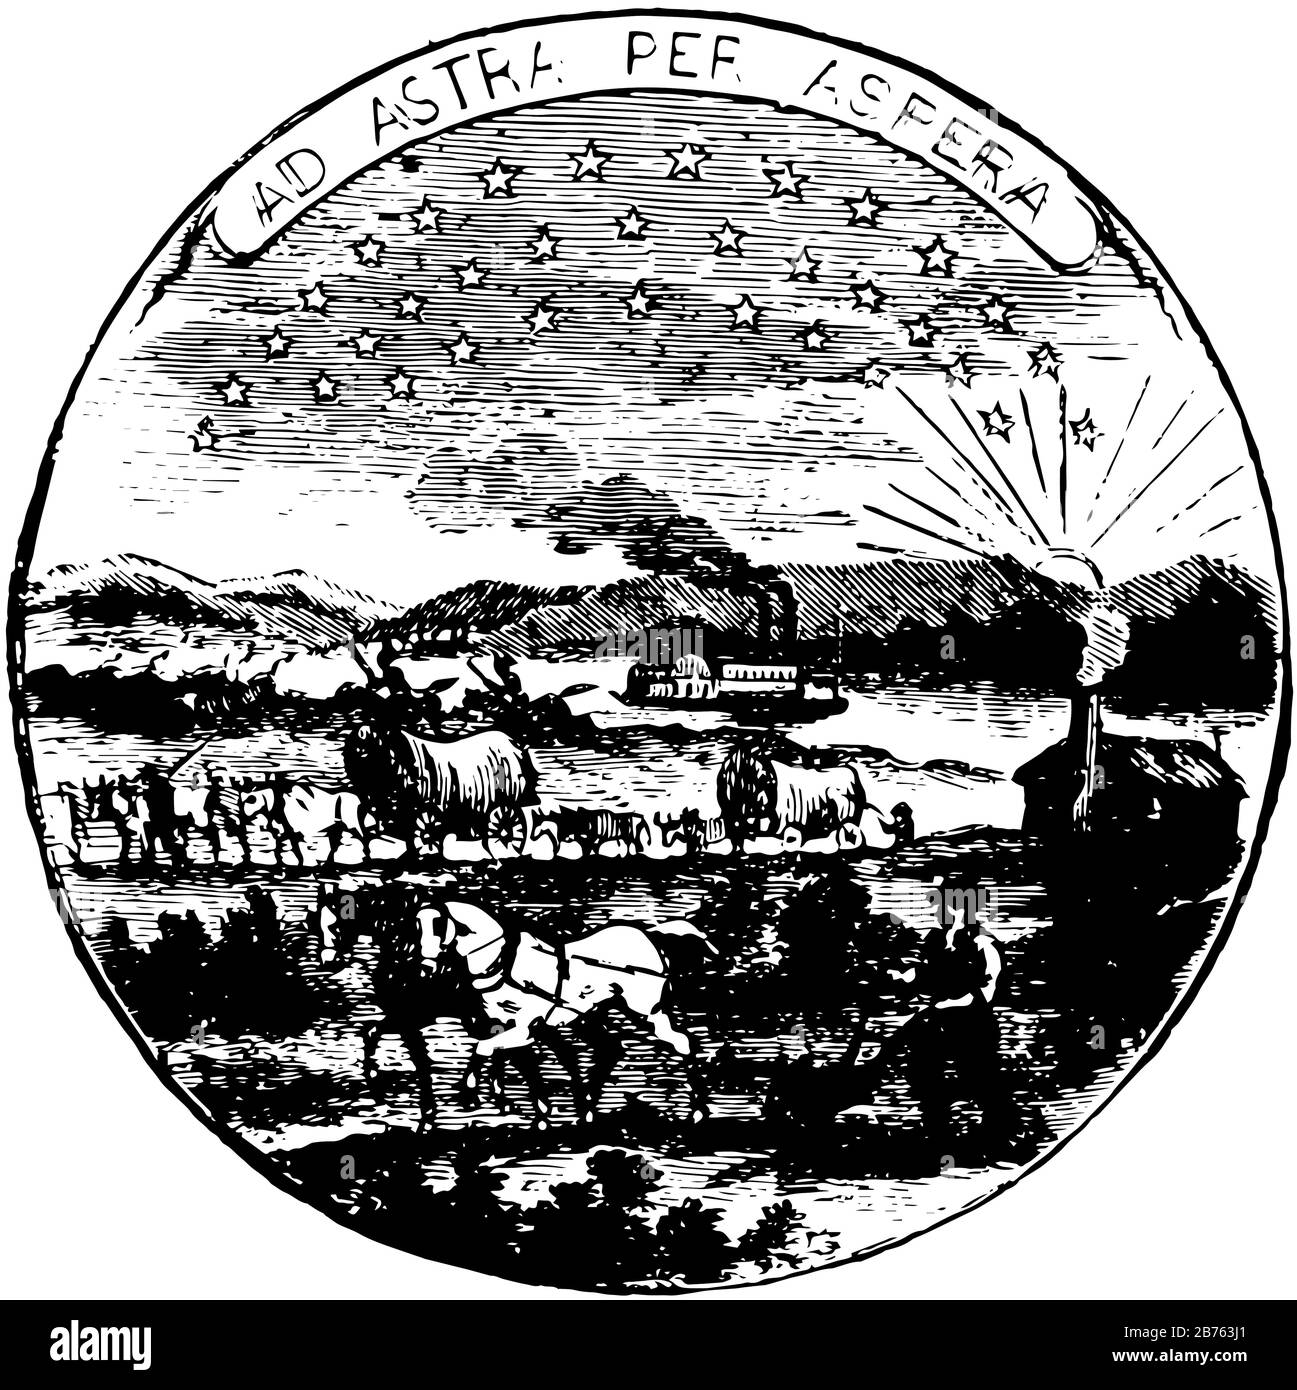 Das offizielle Siegel des US-Bundesstaats Kansas im Jahr 1889, SEAL hat aufgehende Sonne, Fluss und ein Dampfschiff, ein Mann pflügt mit einem Paar Pferden, Laufzug Stock Vektor